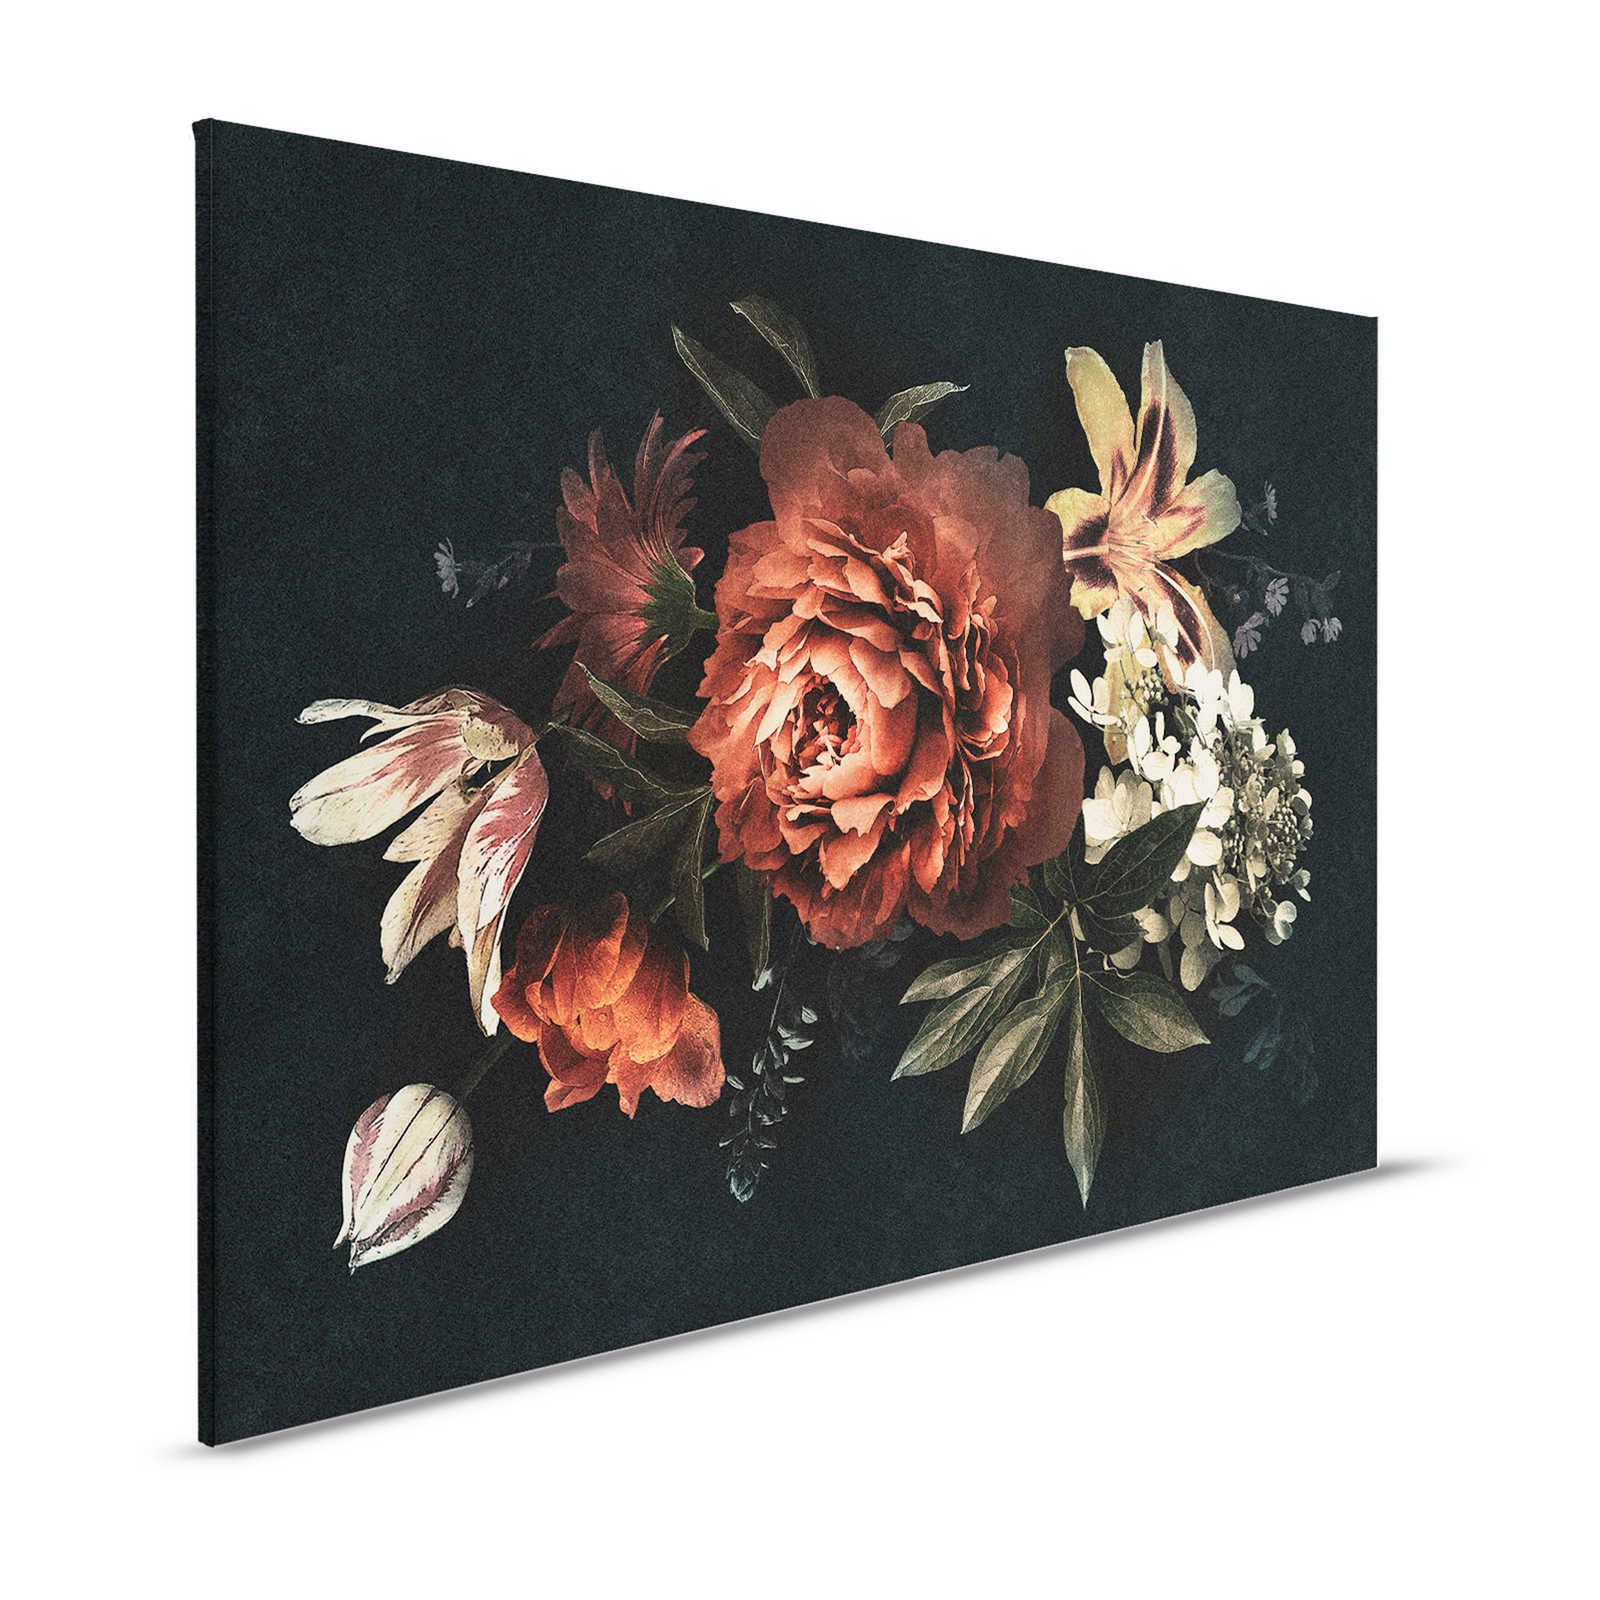 Drama queen 1 - Bouquet de fleurs Tableau sur toile avec fond sombre - 1,20 m x 0,80 m
